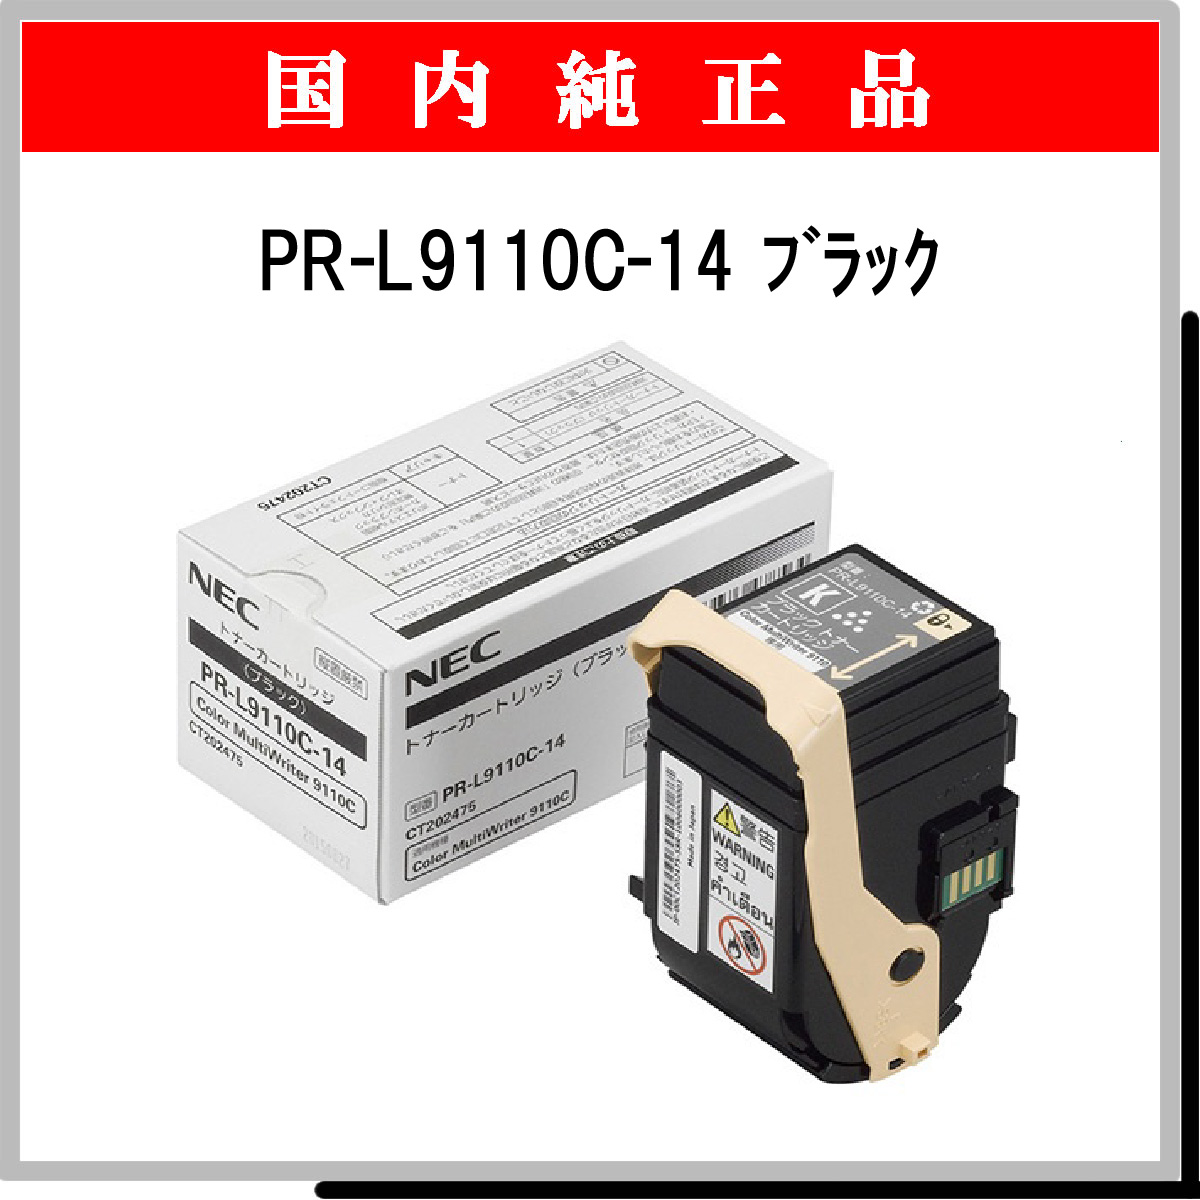 PR-L9110C-14 純正